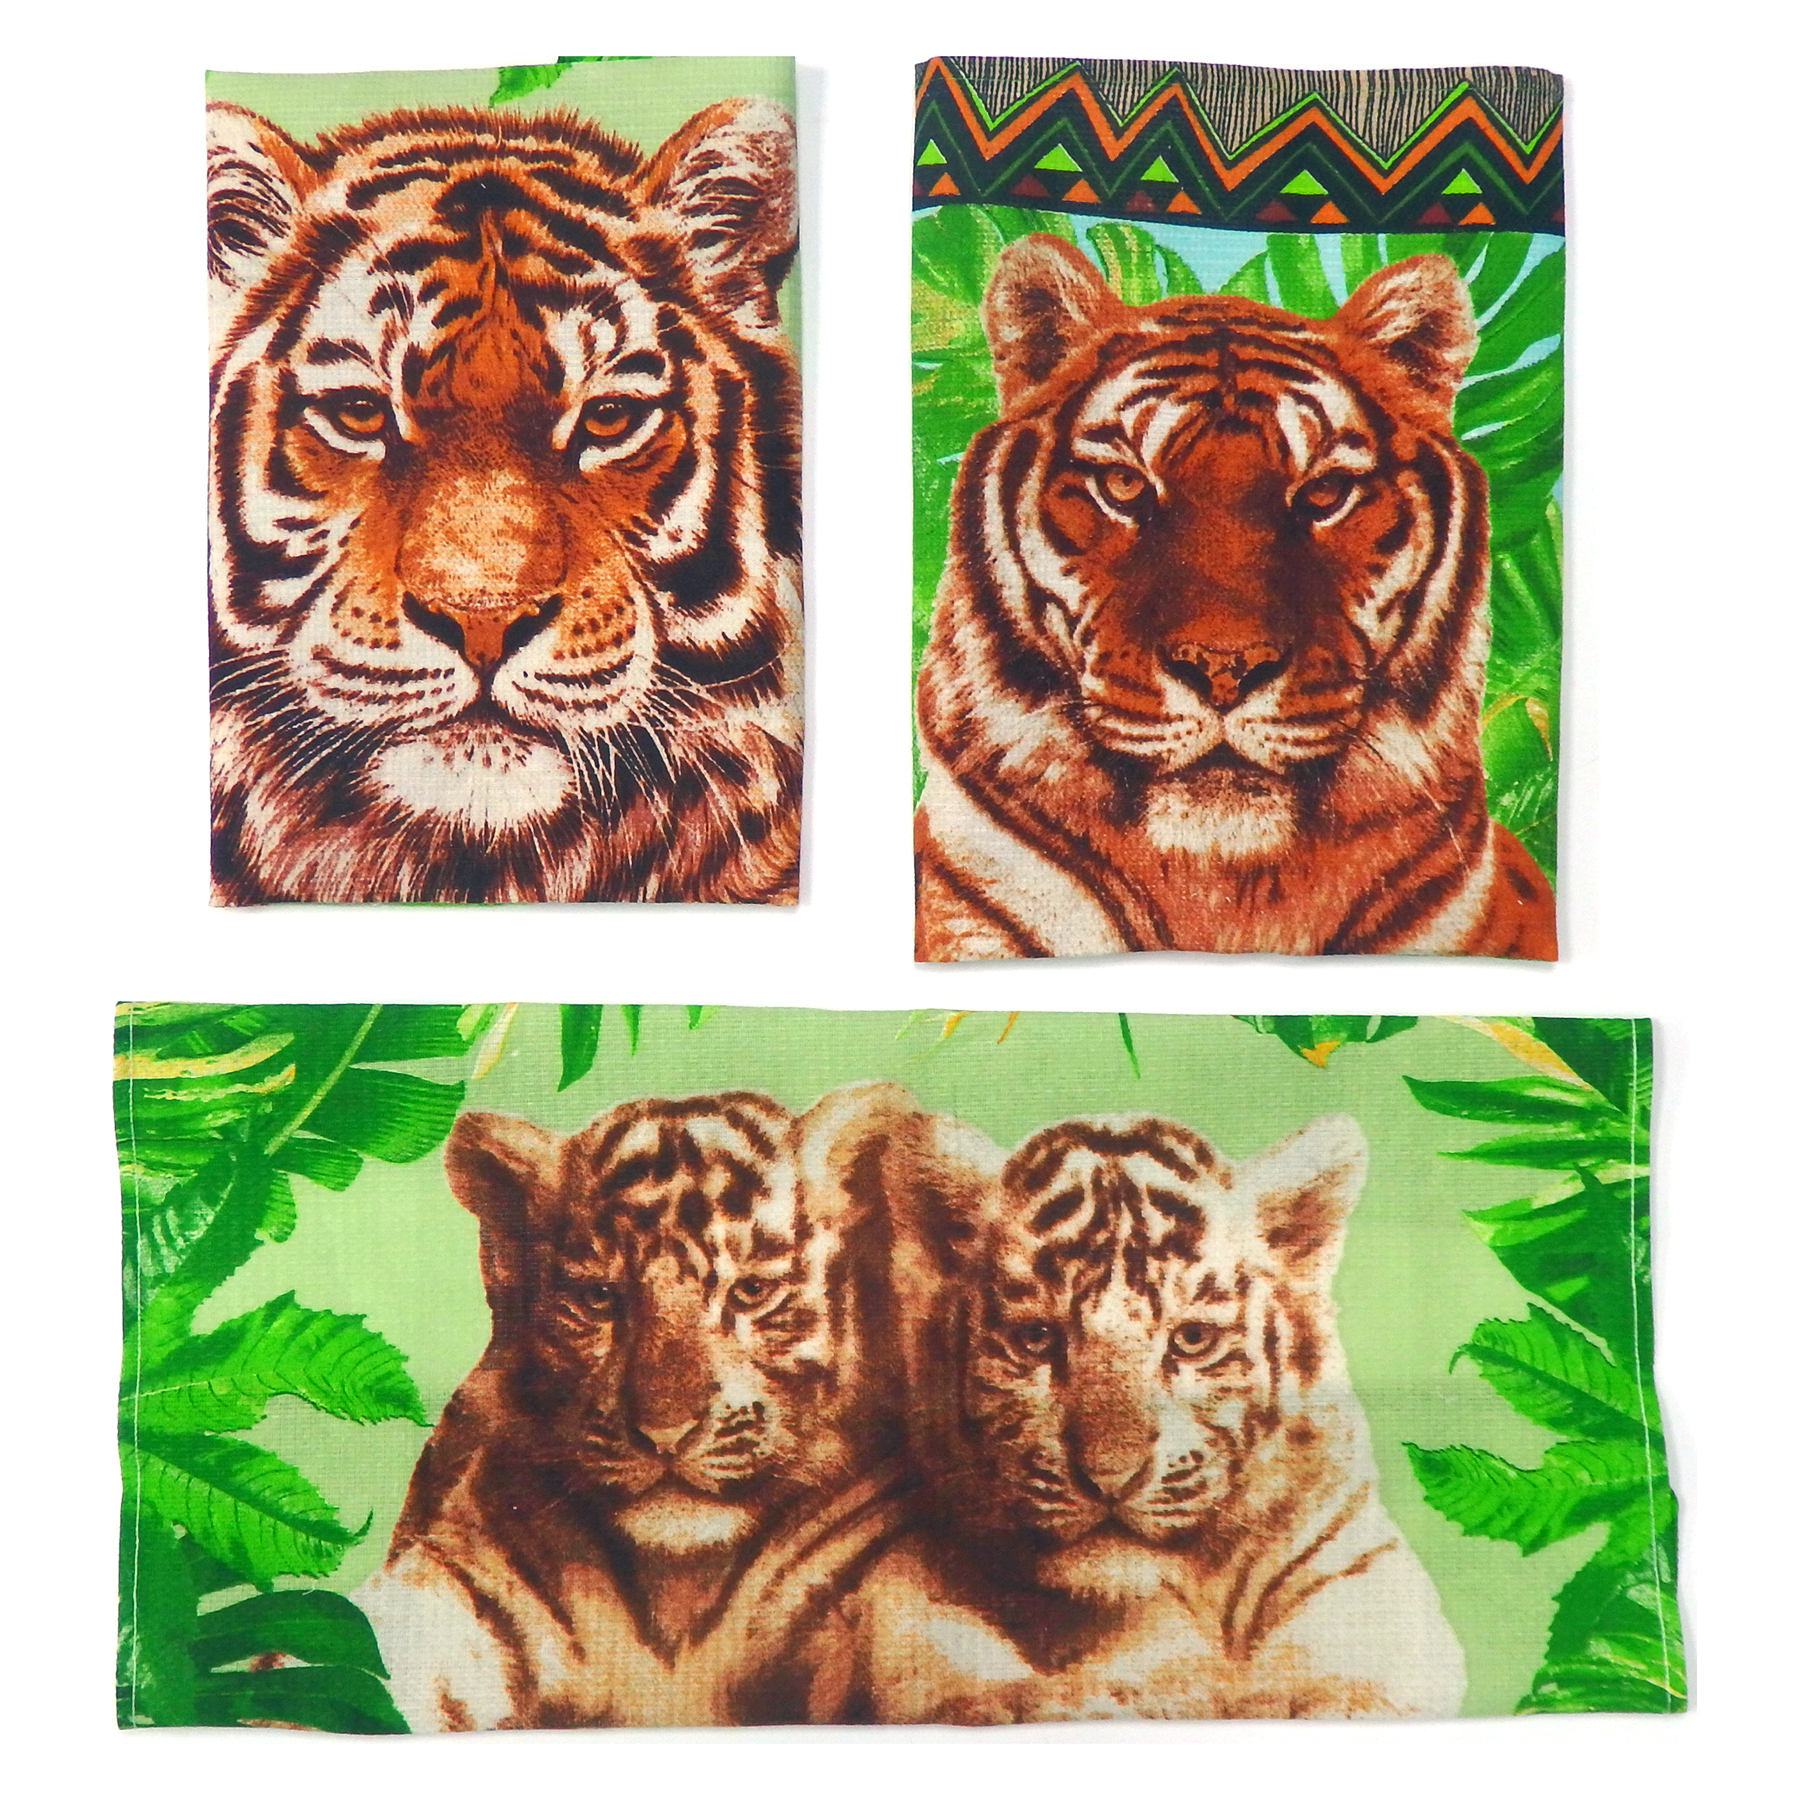 Полотенце с тиграми. Полотенце с тигром. Набор полотенец тигр. Полотенце Тигренок. Полотенце 2010 с тигром.